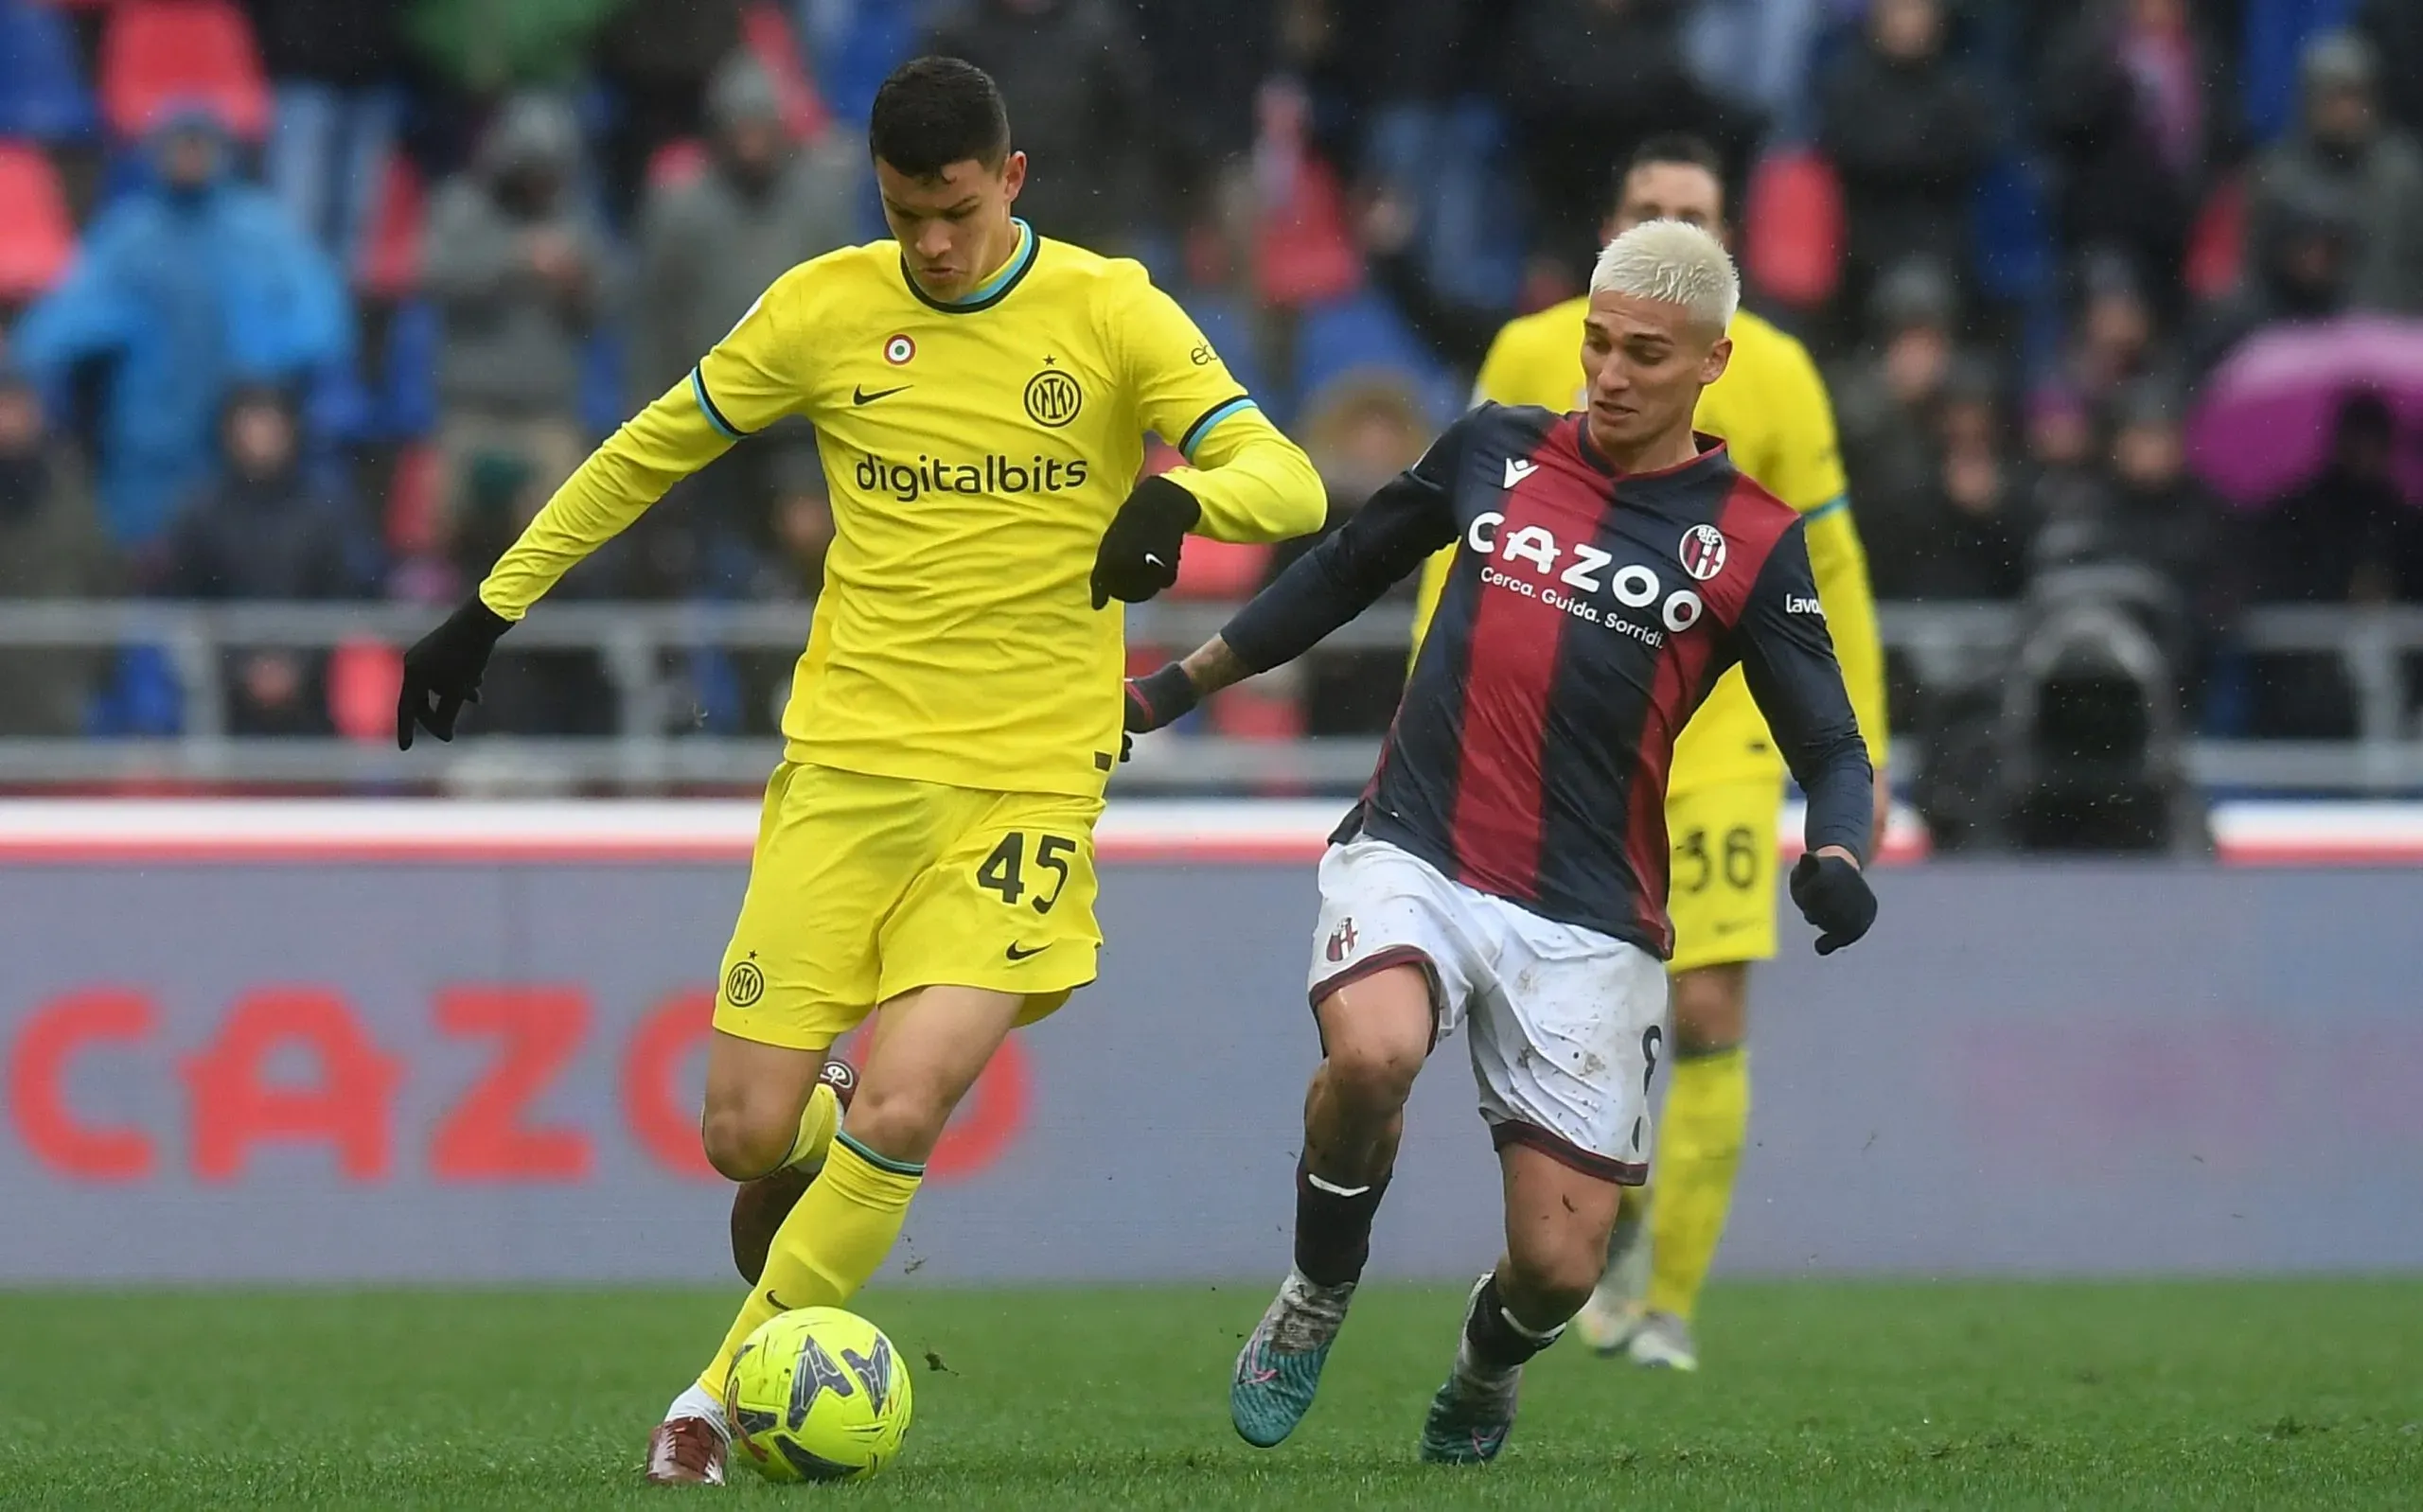 Valentin Carboni en el Inter de Milán vs. Bologna del 26 de febrero. Getty Images.